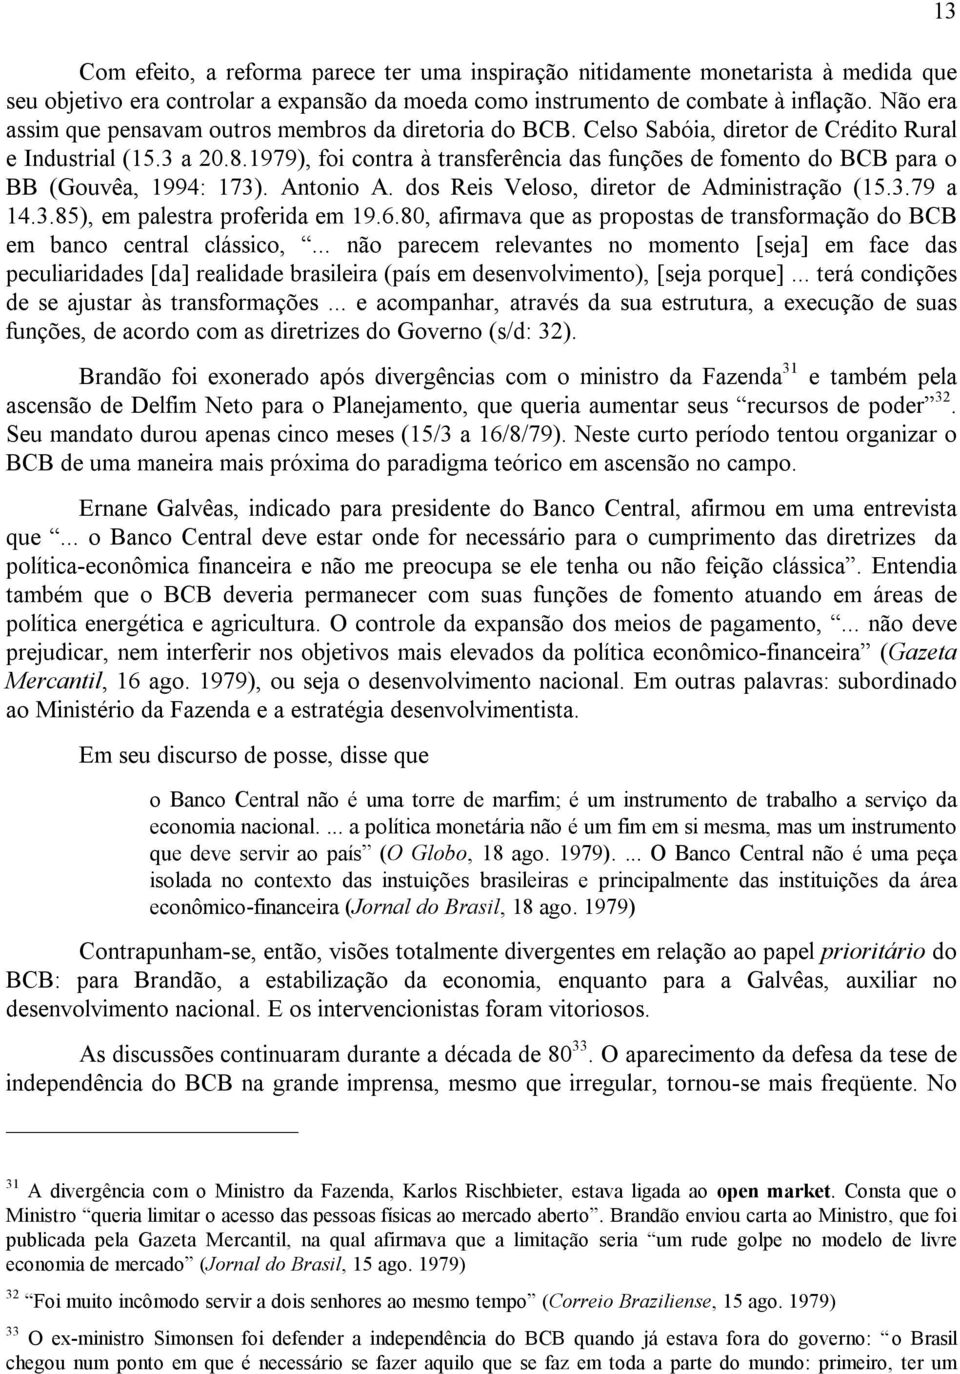 1979), foi contra à transferência das funções de fomento do BCB para o BB (Gouvêa, 1994: 173). Antonio A. dos Reis Veloso, diretor de Administração (15.3.79 a 14.3.85), em palestra proferida em 19.6.